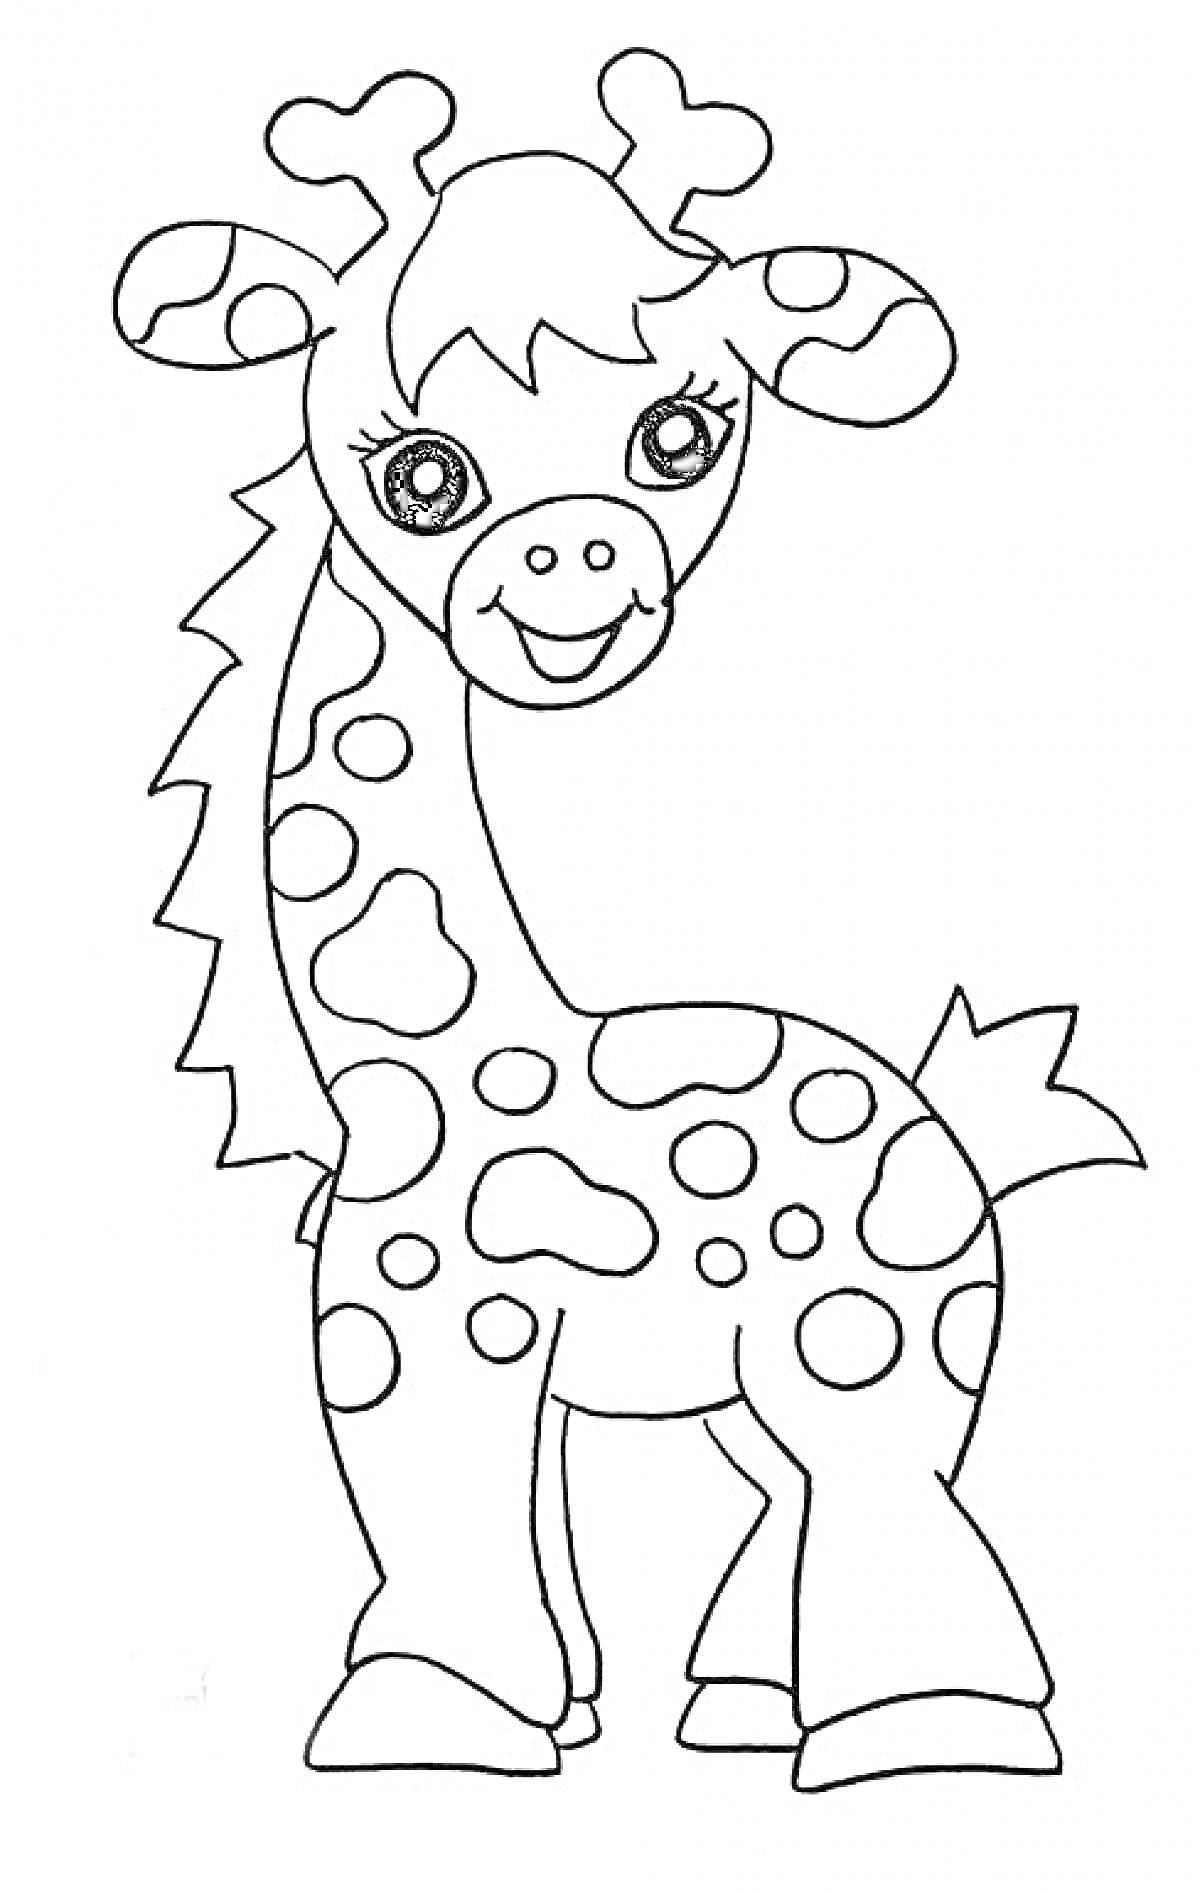 Раскраска Милый мультяшный жираф с пятнами и большими глазами